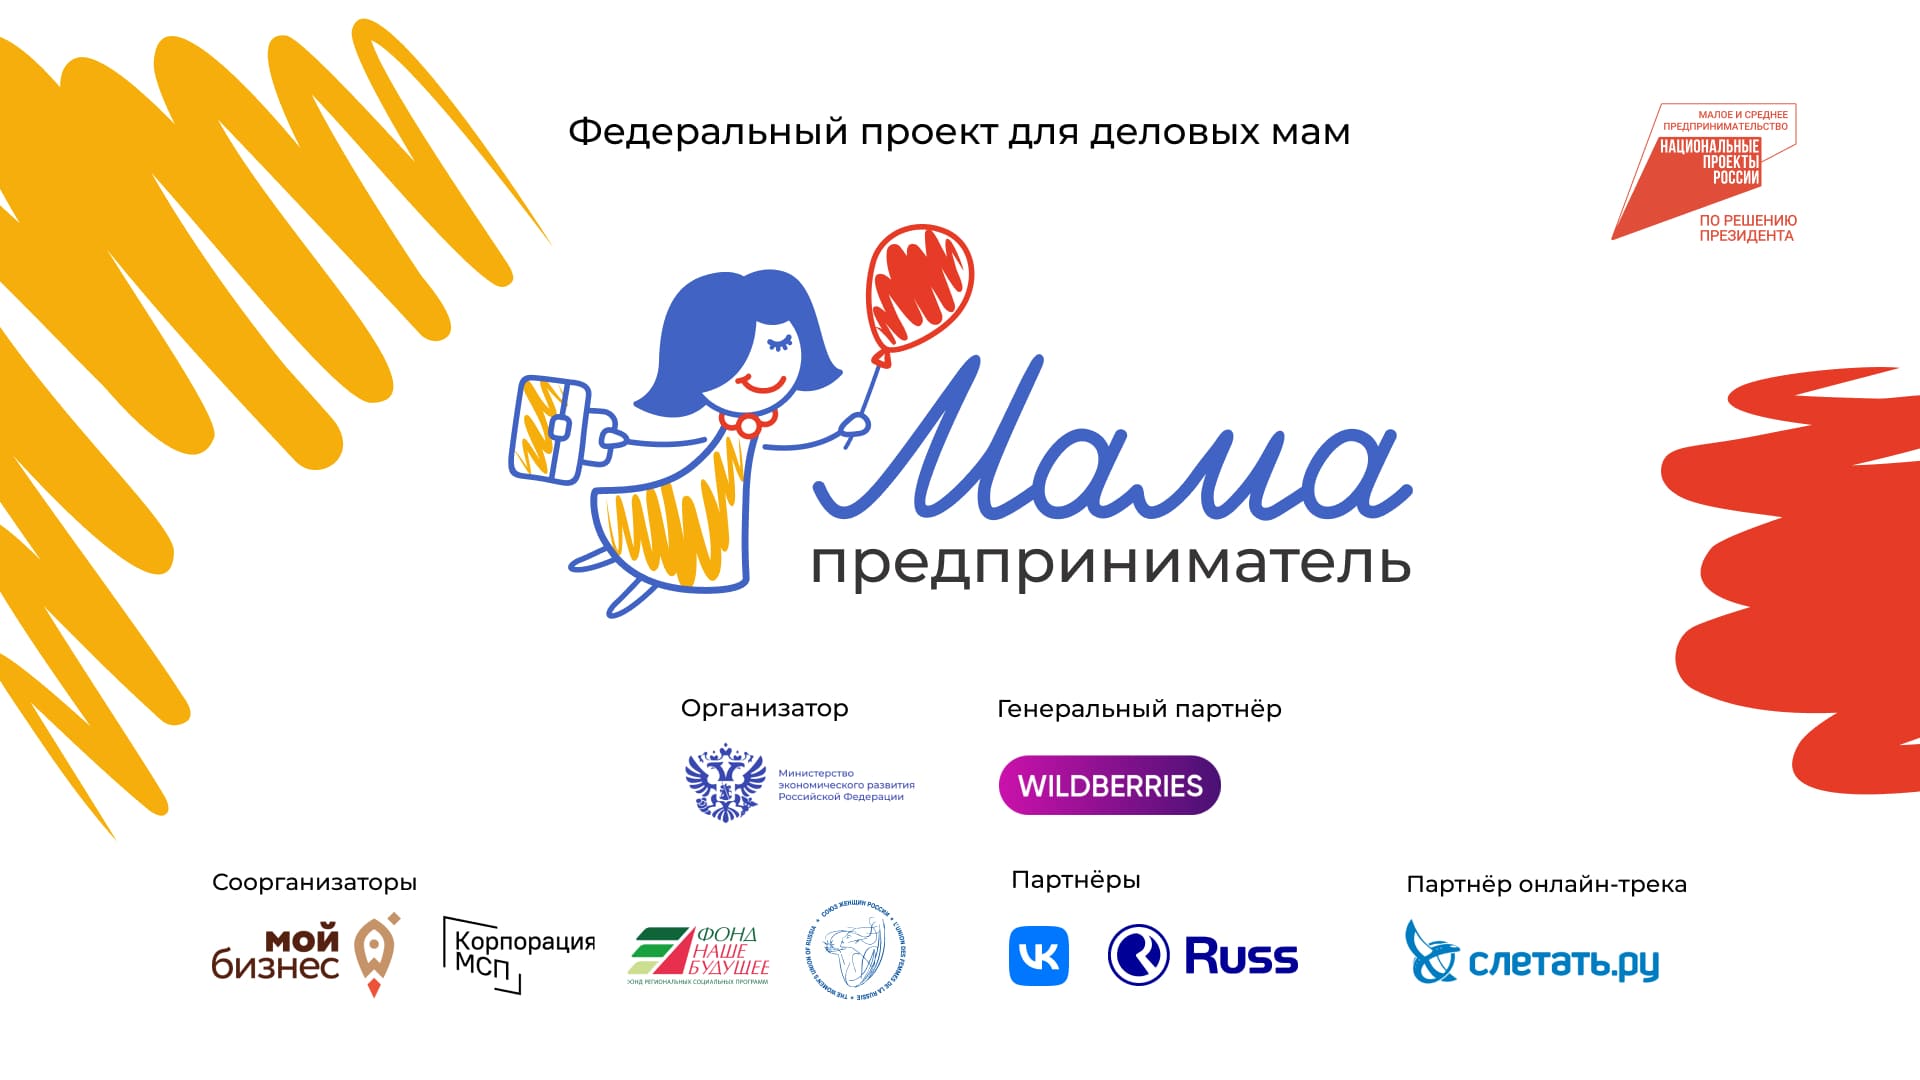 Федеральная программа «Мама-предприниматель» начала прием заявок участниц из Челябинской области